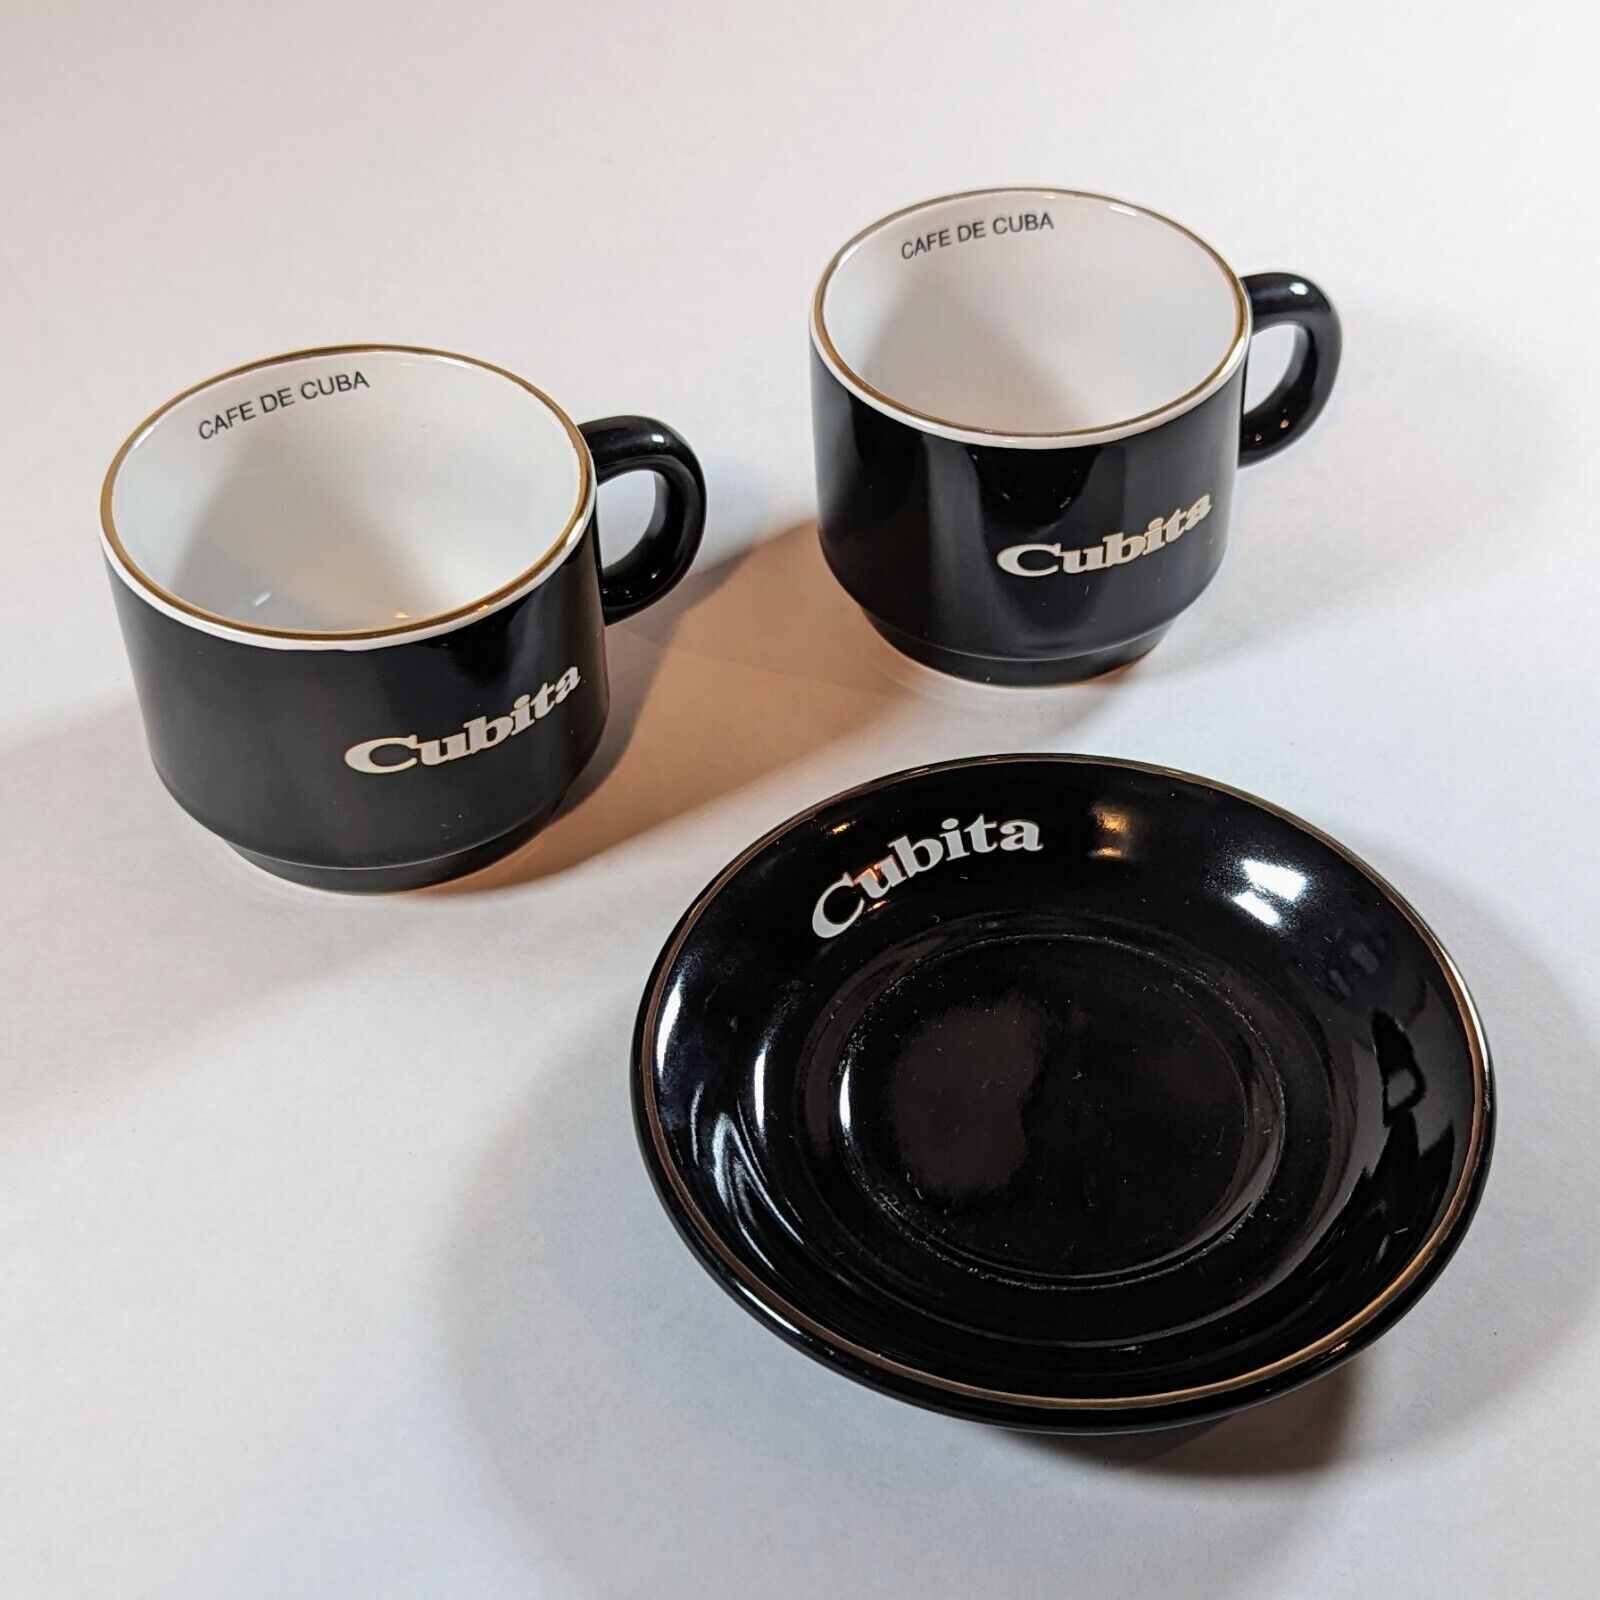 Cubita Cafe de Cuba Espresso Coffee Ceramic 2 Cups and 1 Saucer (Lot of 3)